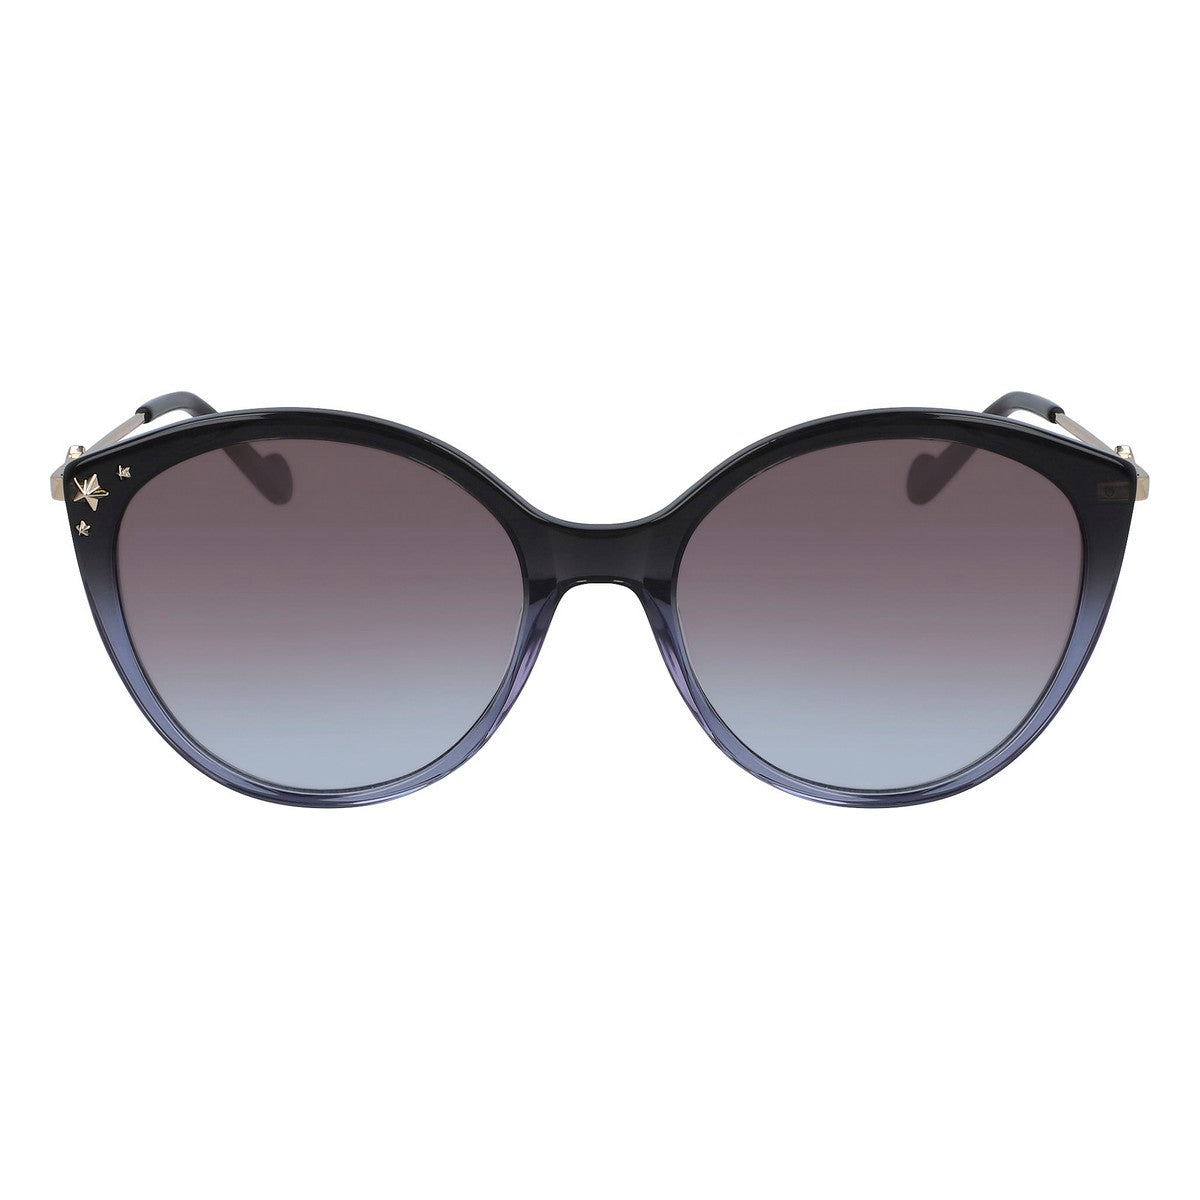 Kaufe Damensonnenbrille Liu·Jo LJ735S-040 ø 55 mm bei AWK Flagship um € 56.00